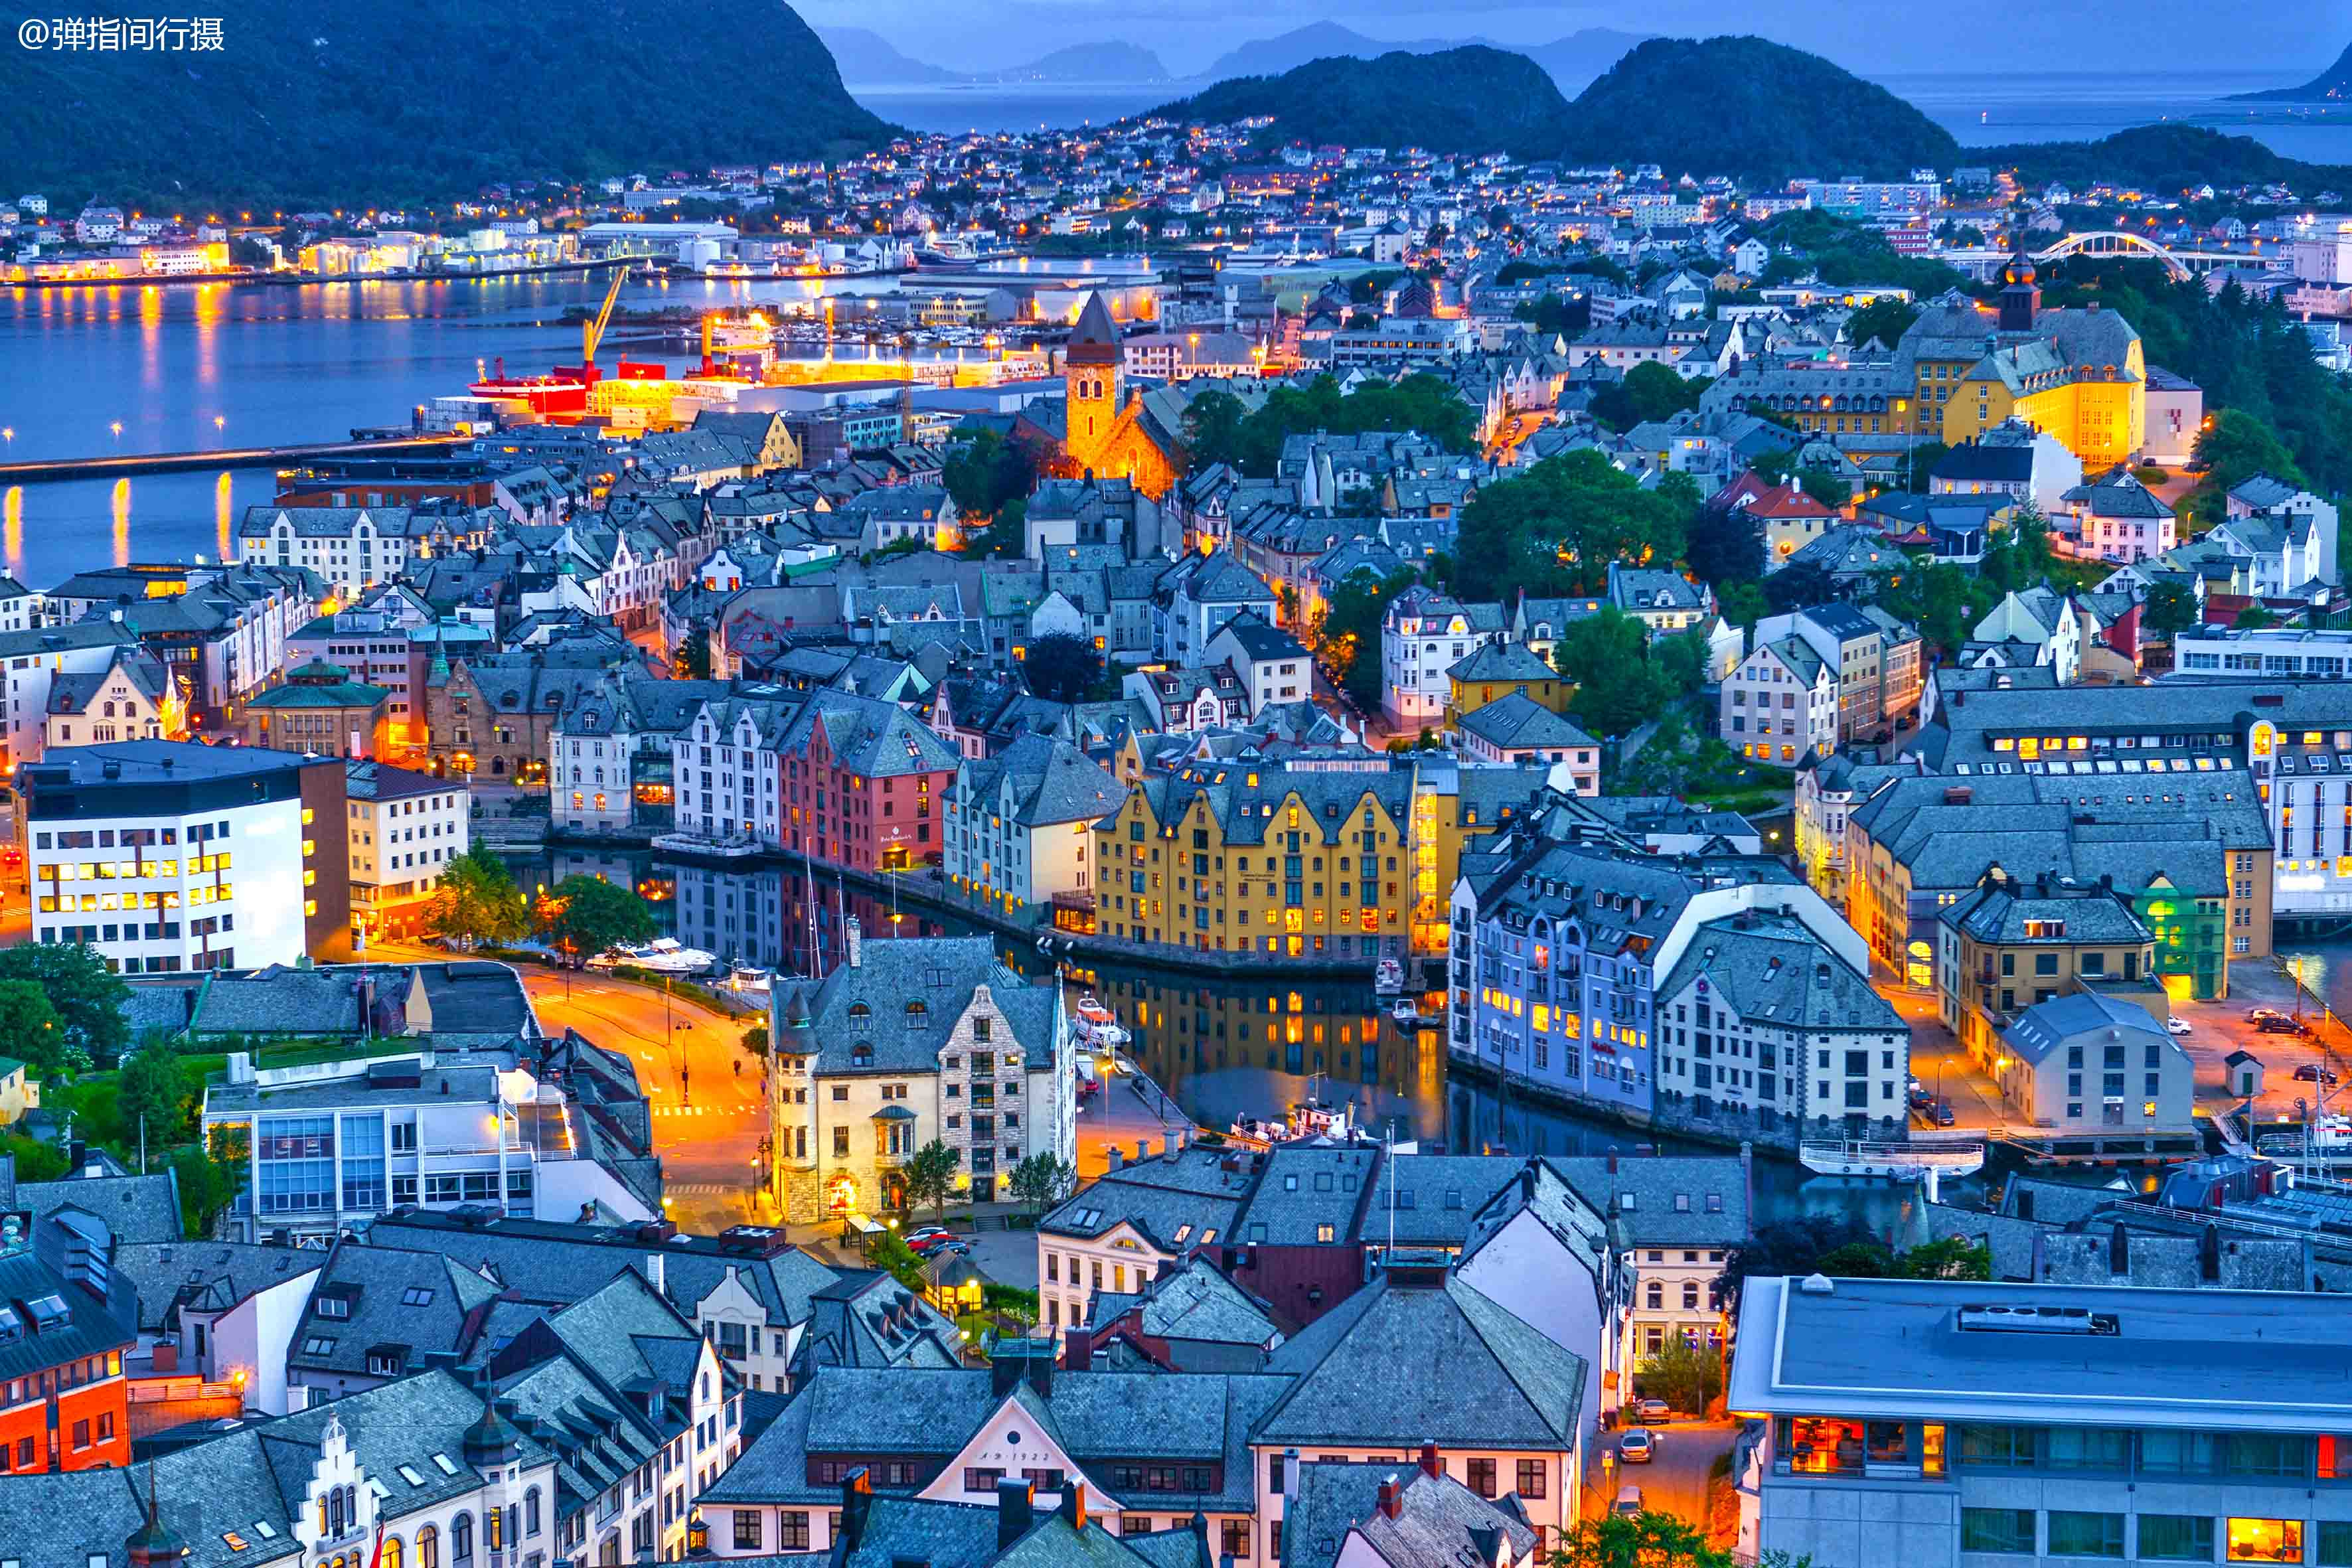 挪威传奇小城,火灾重建后颜值飙升,城市建筑美如童话世界